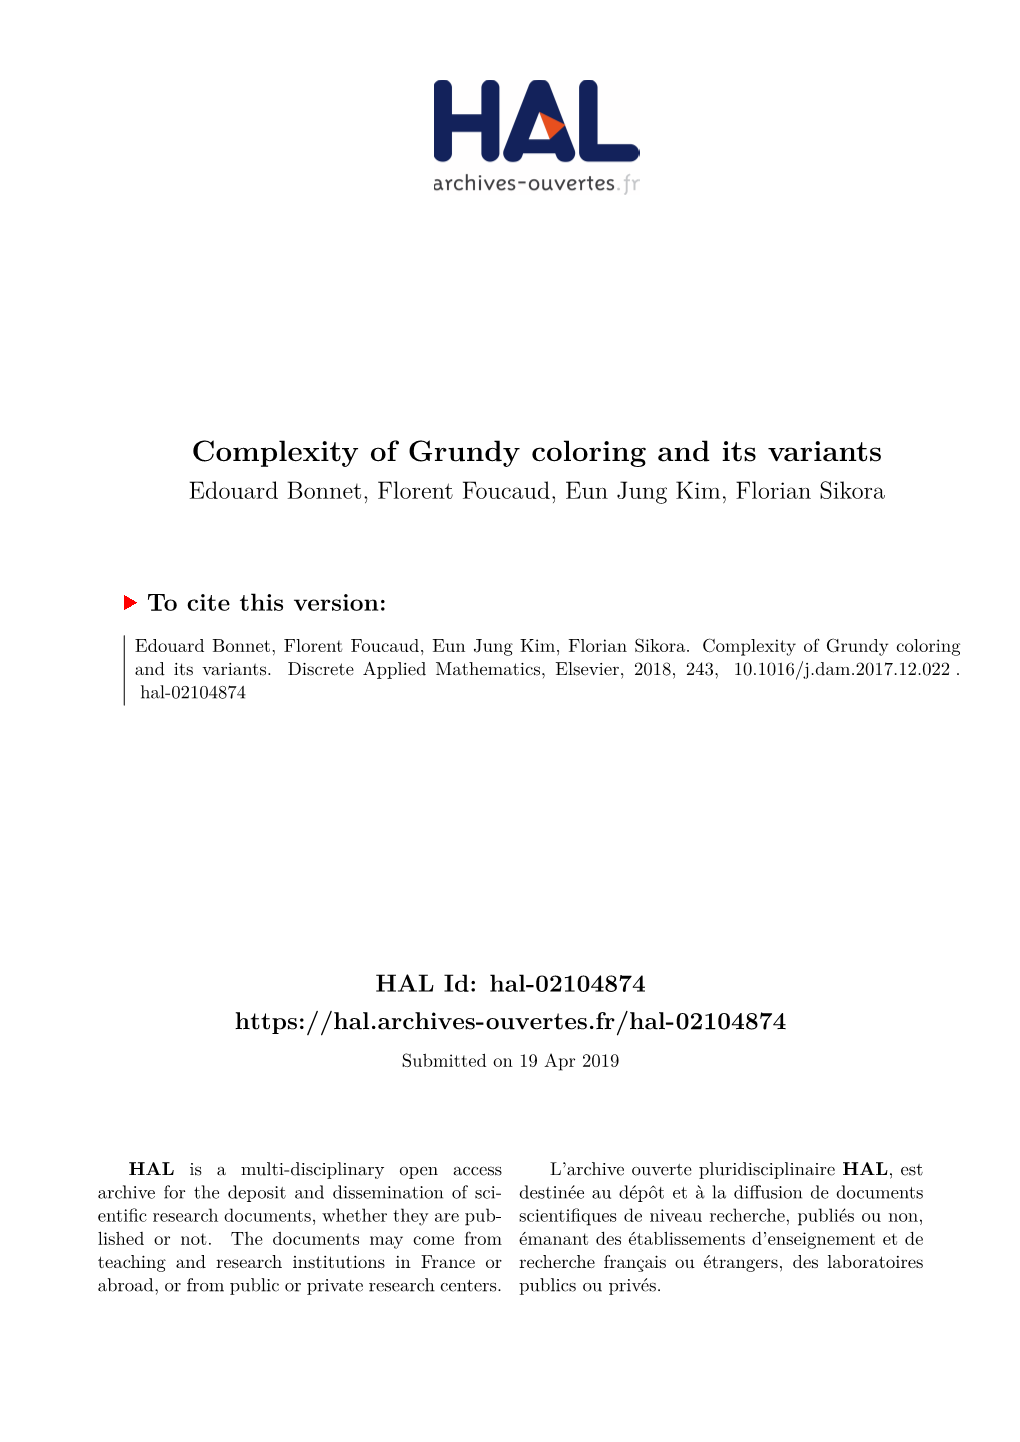 Complexity of Grundy Coloring and Its Variants Edouard Bonnet, Florent Foucaud, Eun Jung Kim, Florian Sikora